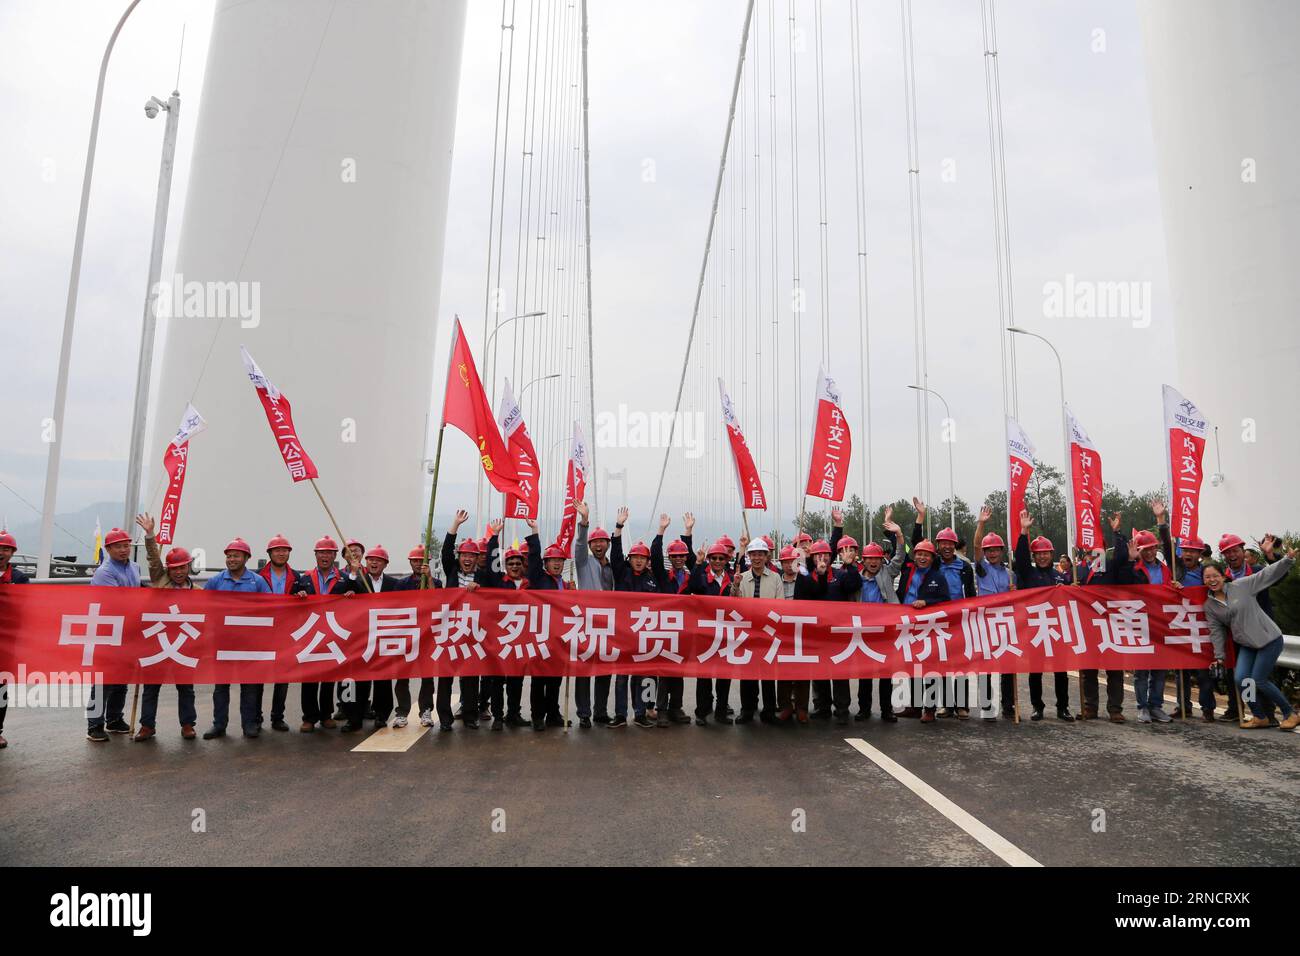 (160420) - KUNMING, 20 de abril de 2016 -- Miembros de las unidades de construcción del gran puente de Longjiang celebran la apertura del puente en la provincia de Yunnan, en el suroeste de China, el 20 de abril de 2016. El gran puente de Longjiang en la carretera Baoshan-Tengchong, con una longitud de más de 2.470 metros y una altura de 280 metros, tiene el tramo más largo entre todos los puentes colgantes de vigas de acero en las zonas montañosas de Asia. )(wjq) CHINA-YUNNAN-GRAND BRIDGE (CN ) LiuxZhengfan PUBLICATIONxNOTxINxCHN 160420 Kunming Abril 20 2016 Los miembros de las unidades de construcción del Gran Puente Long Jiang celebran la apertura del Foto de stock